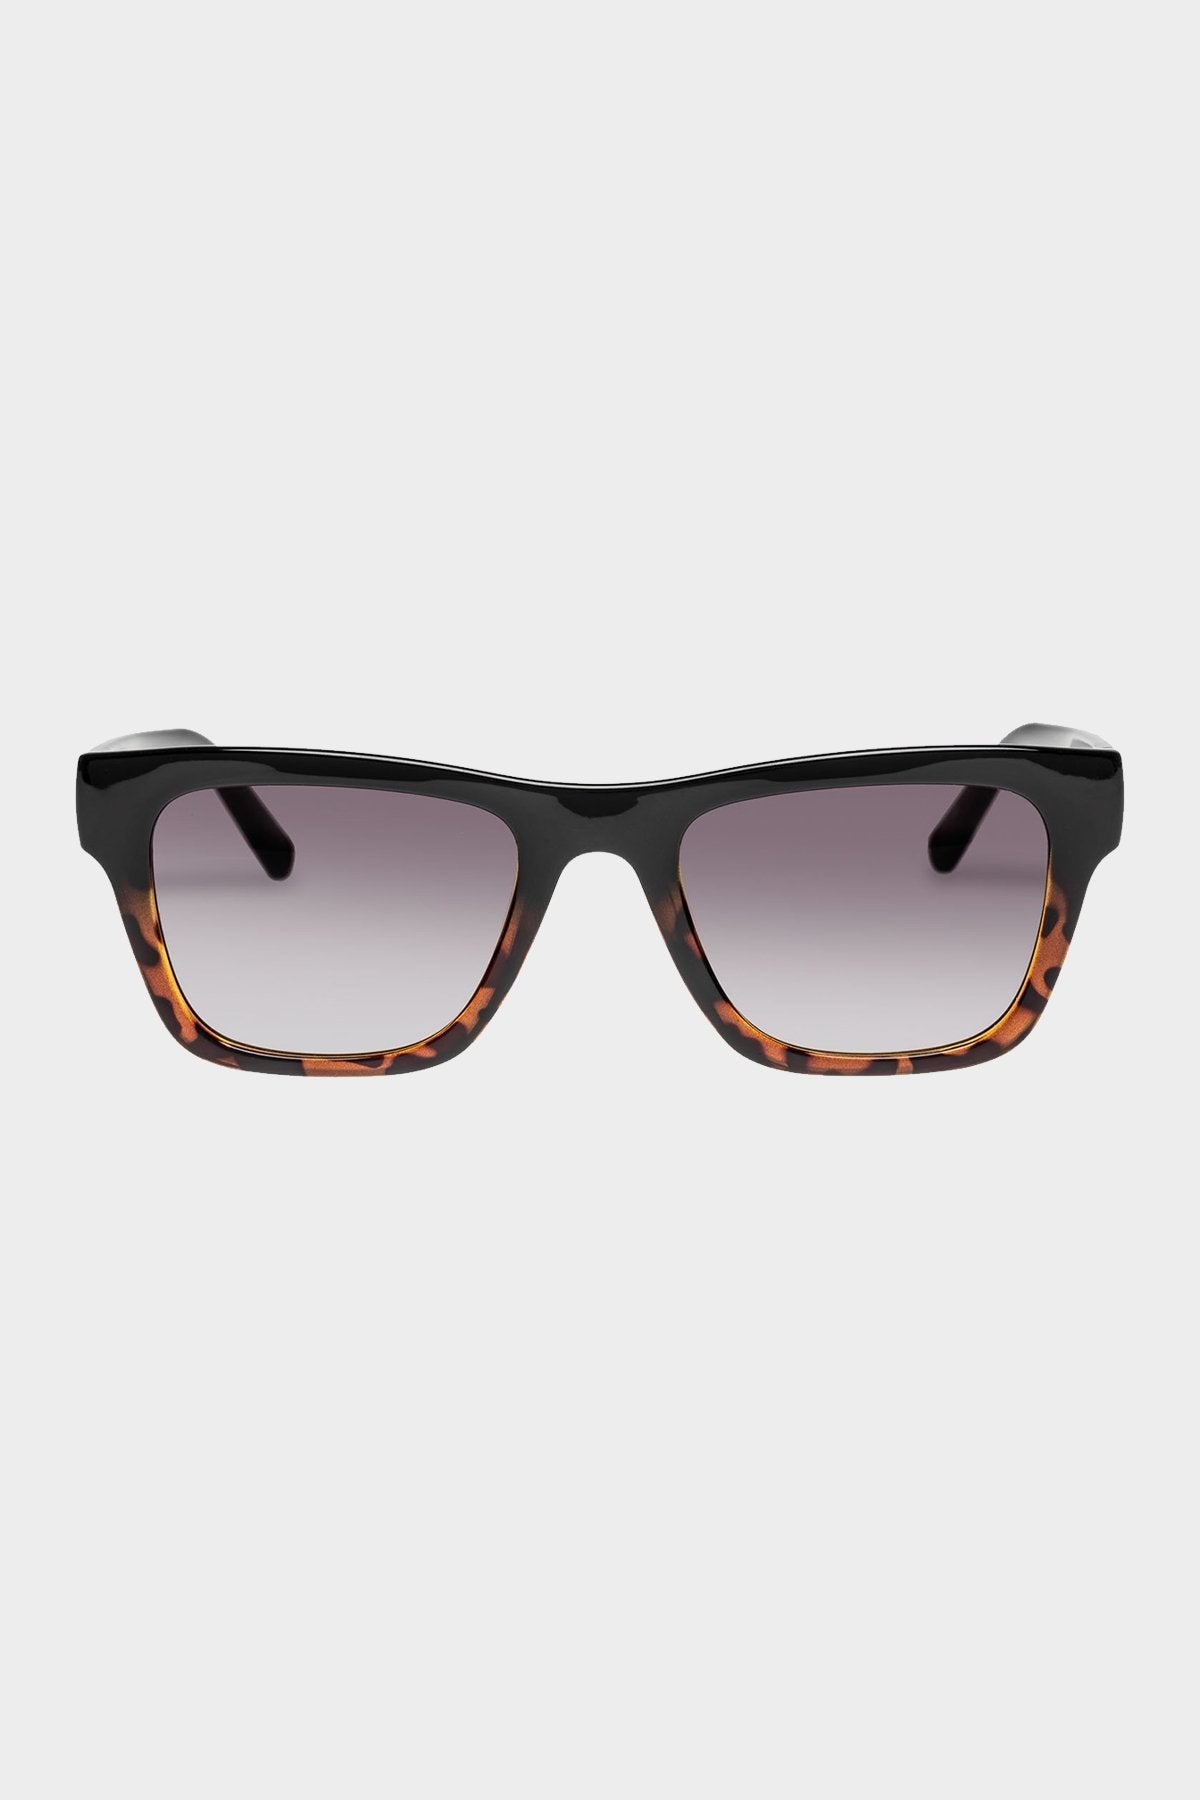 Le Phoque Sunglasses in Black Tort Splice - shop-olivia.com